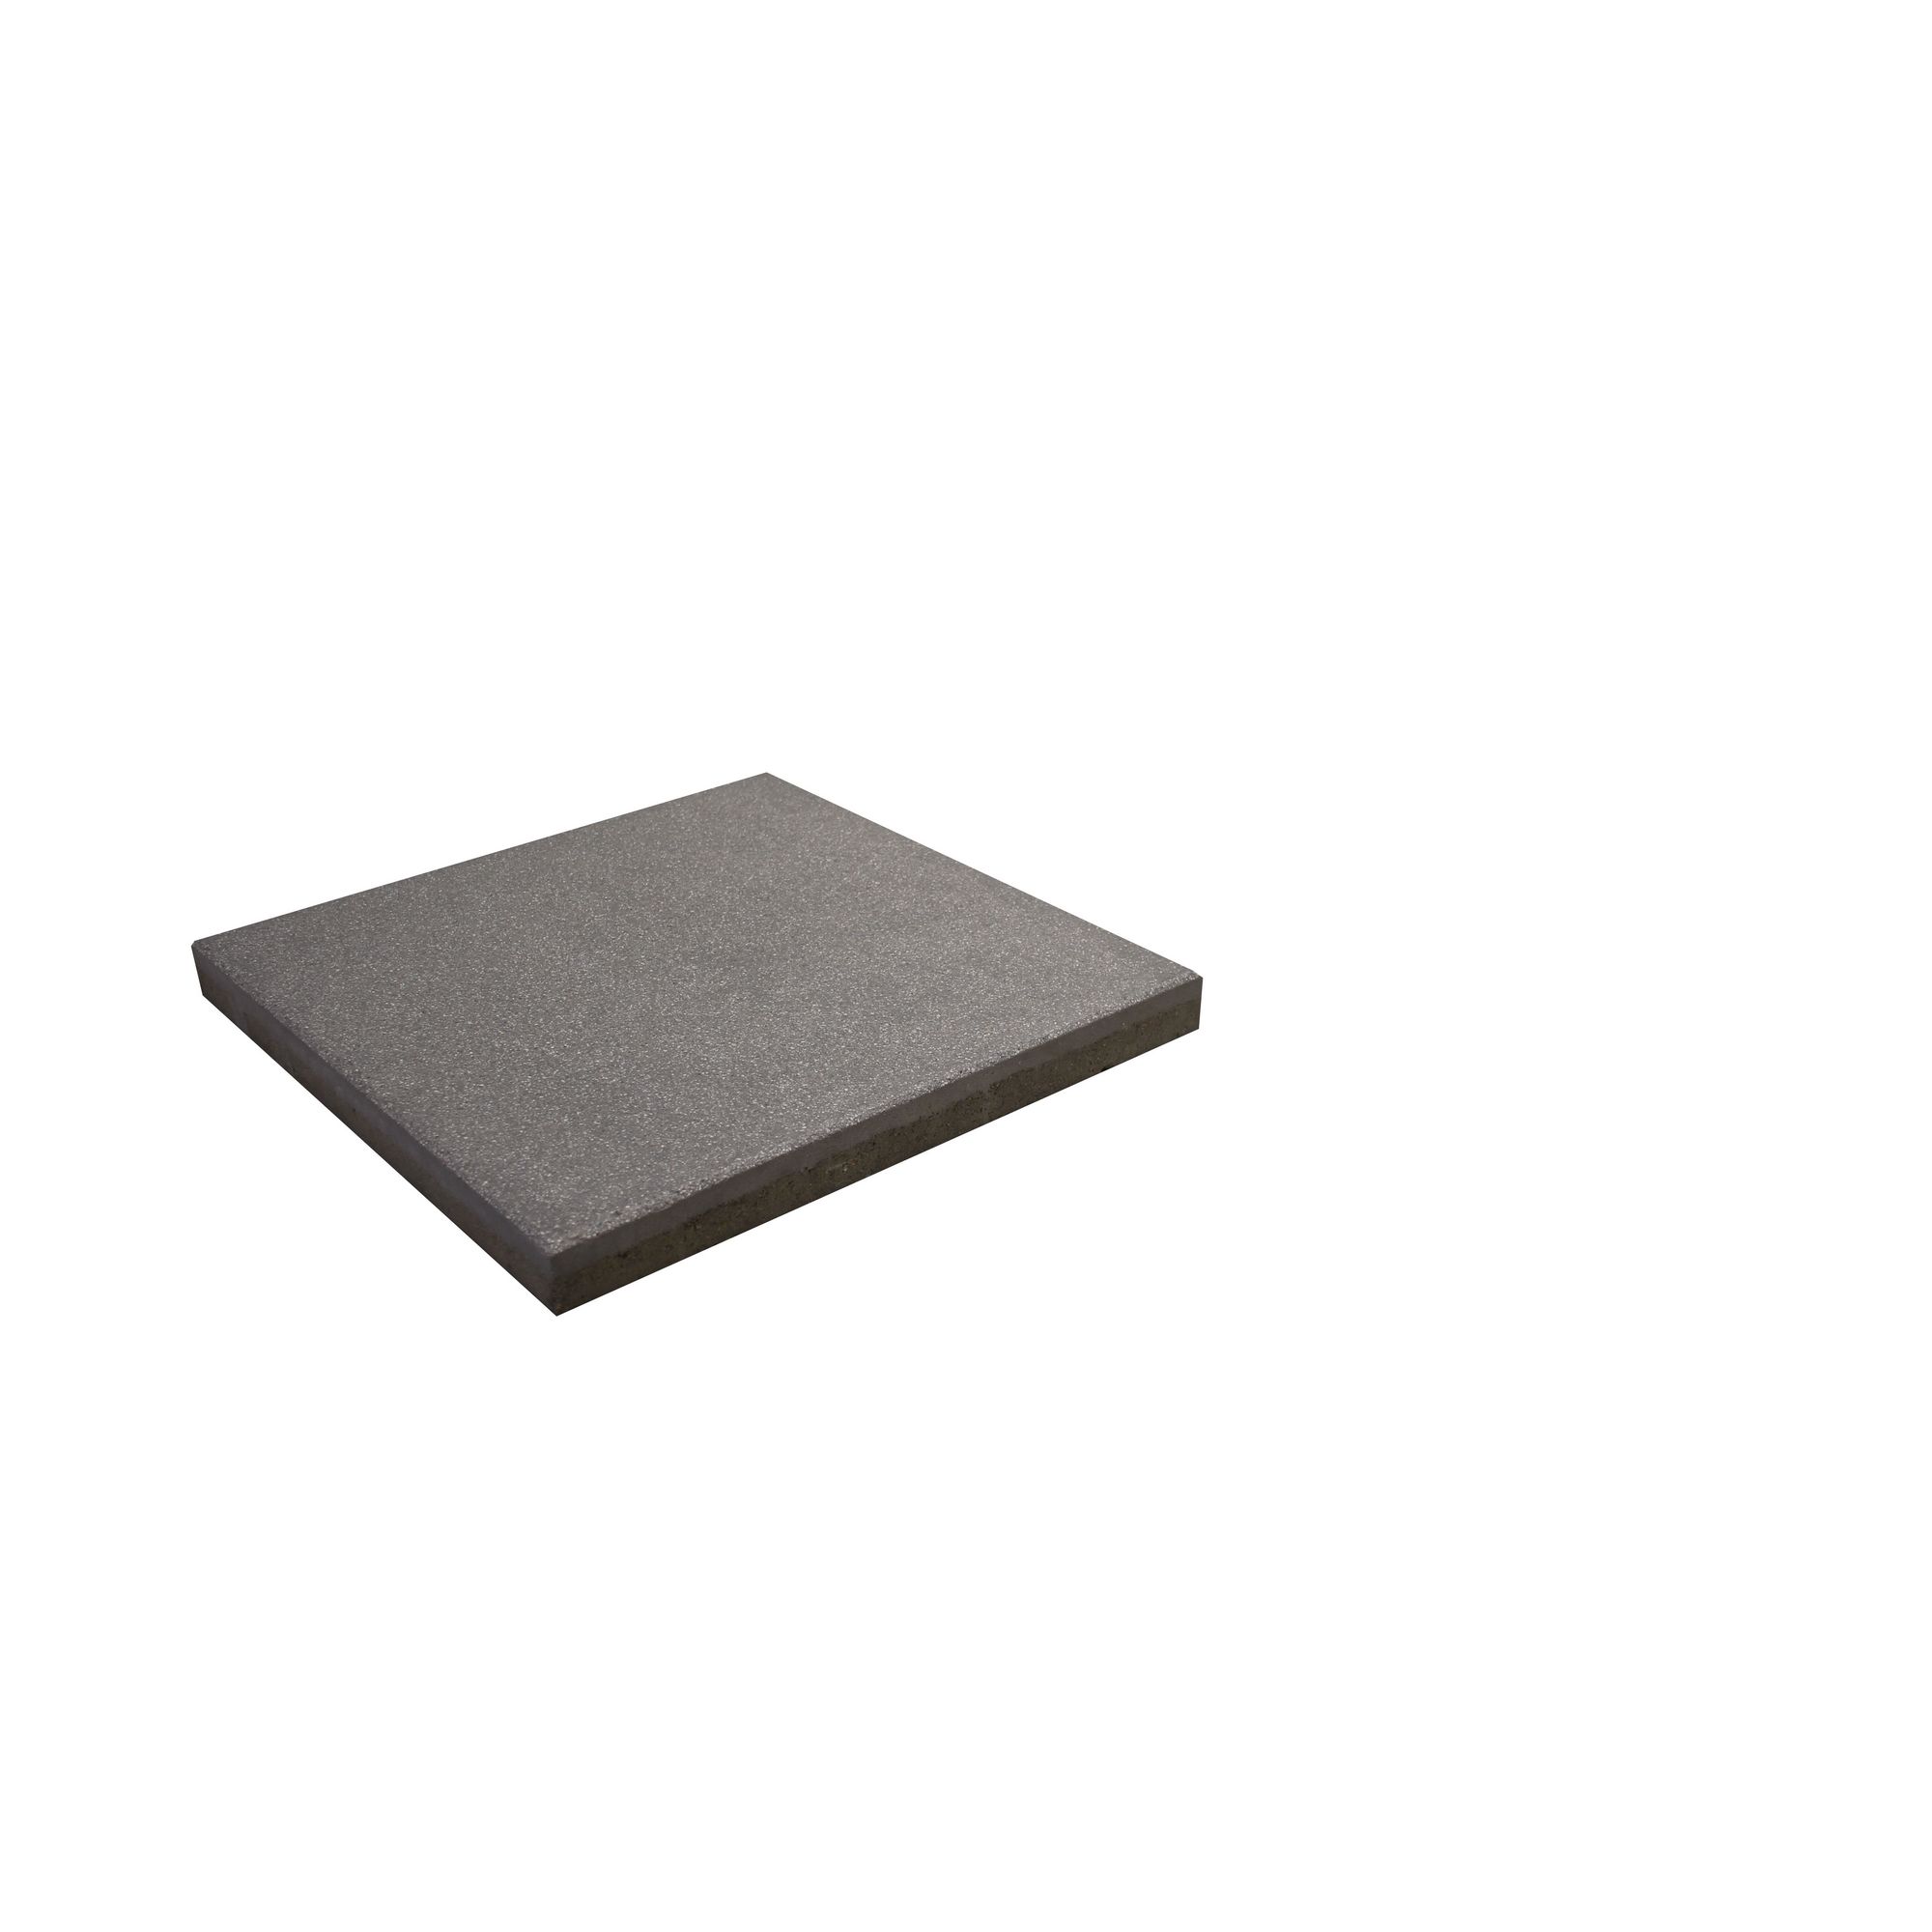 Platte 'Mesafino' grau 40 x 40 x 3,8 cm + product picture